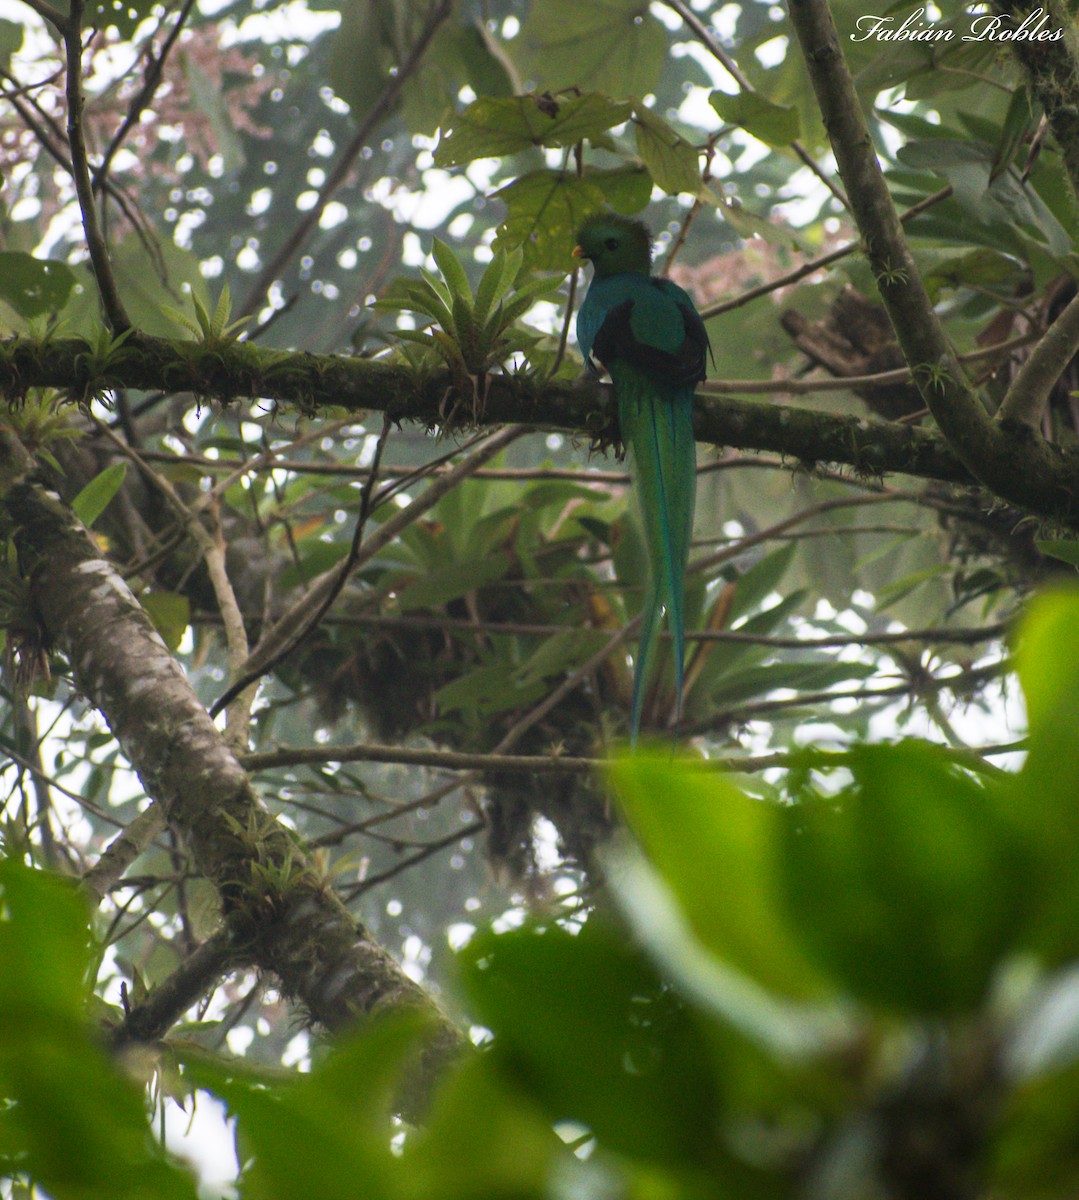 Resplendent Quetzal - FABIAN ROBLES